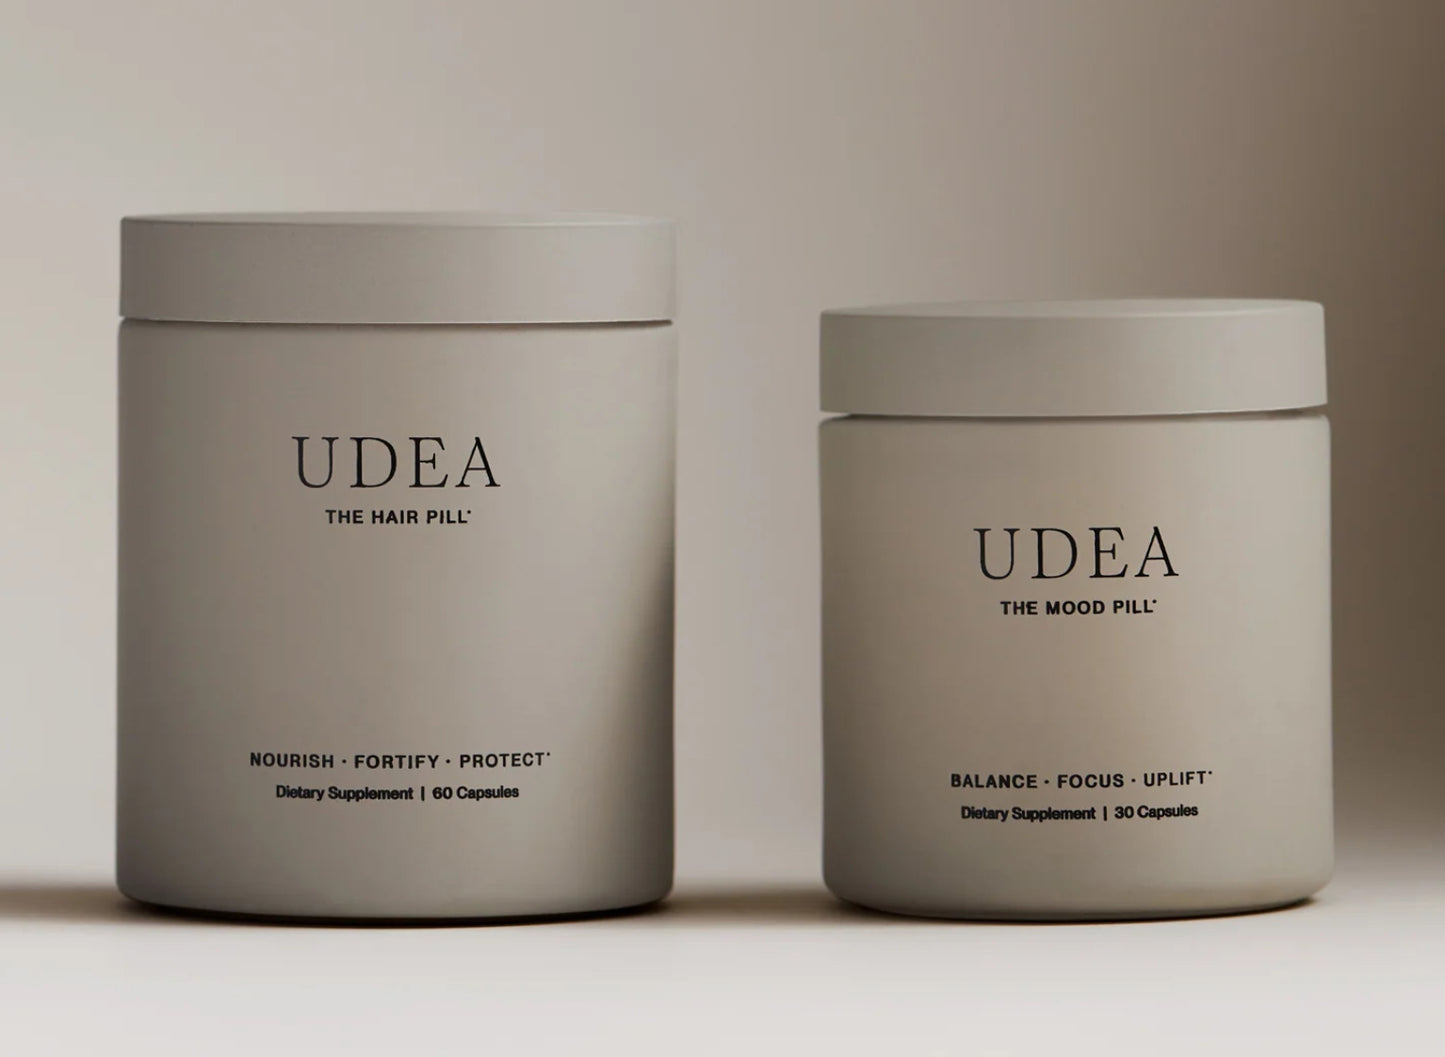 UDEA. The hair pill